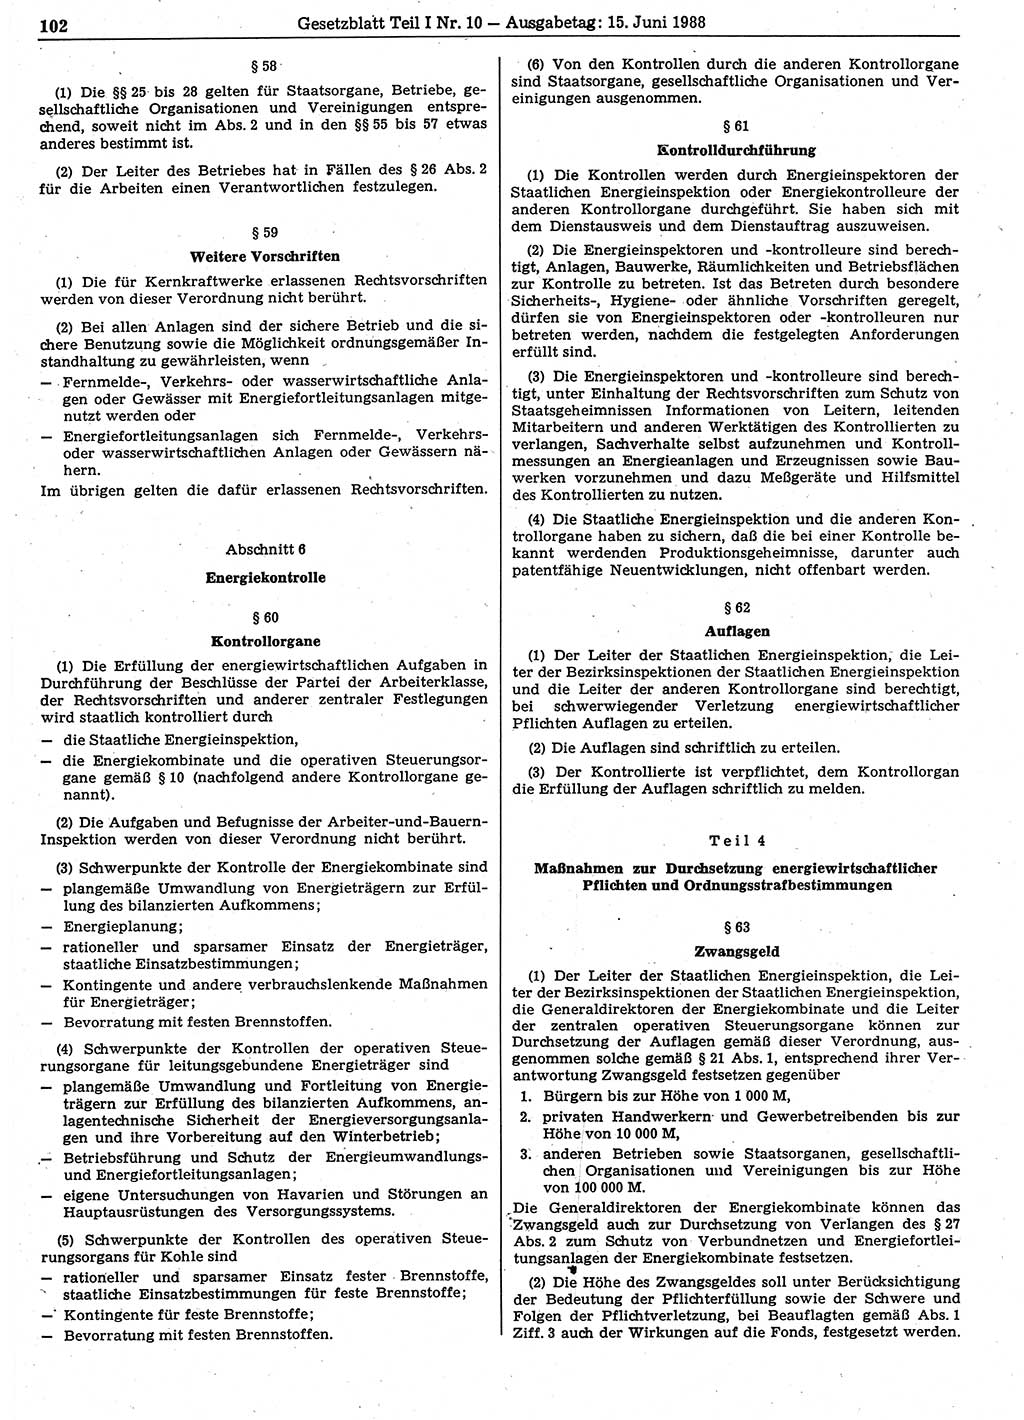 Gesetzblatt (GBl.) der Deutschen Demokratischen Republik (DDR) Teil Ⅰ 1988, Seite 102 (GBl. DDR Ⅰ 1988, S. 102)